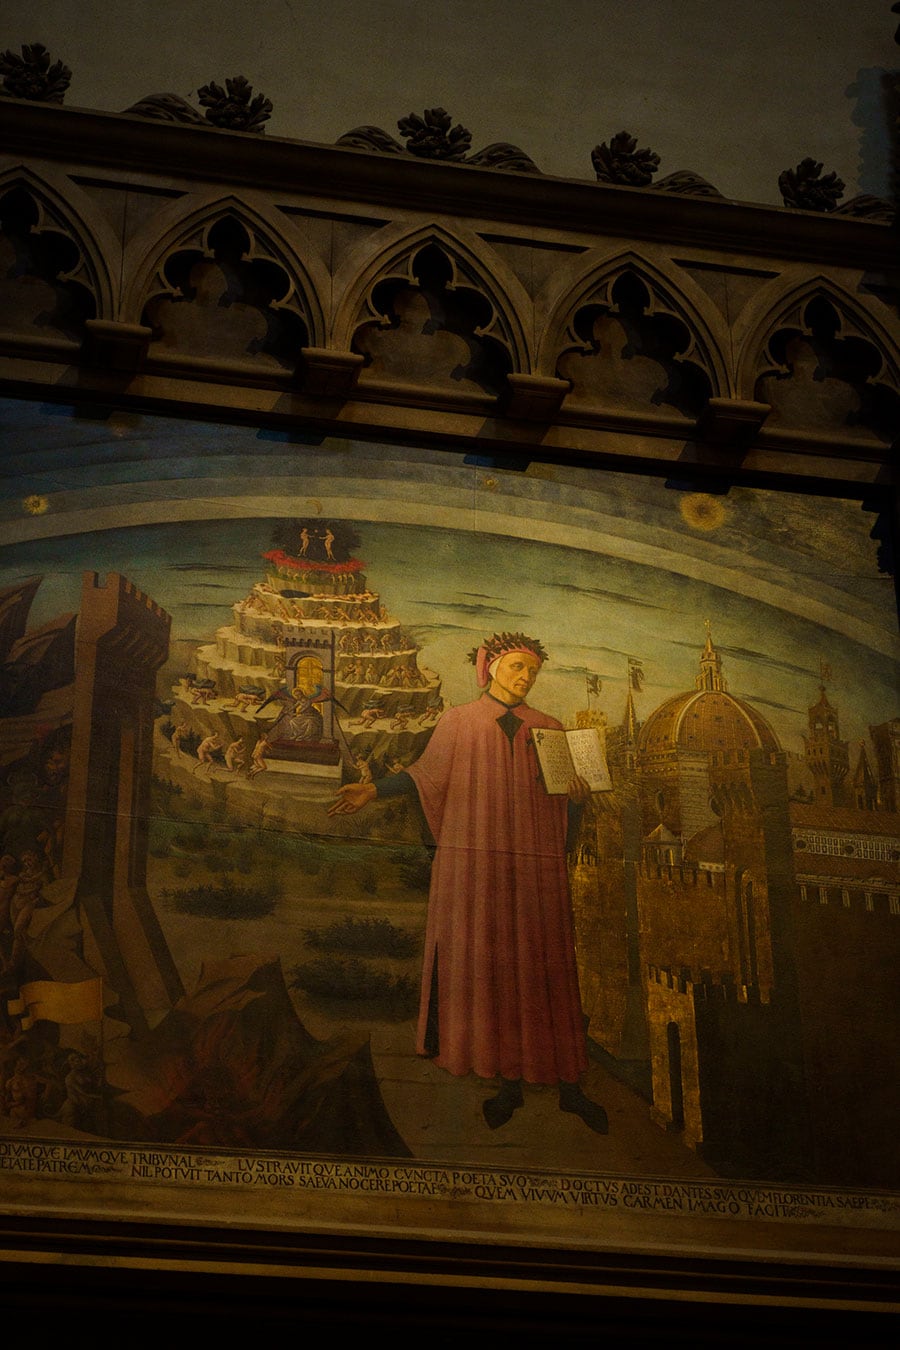 画家ミケリーノがフィレンツェ出身の詩聖を描いた《ダンテとその世界》。